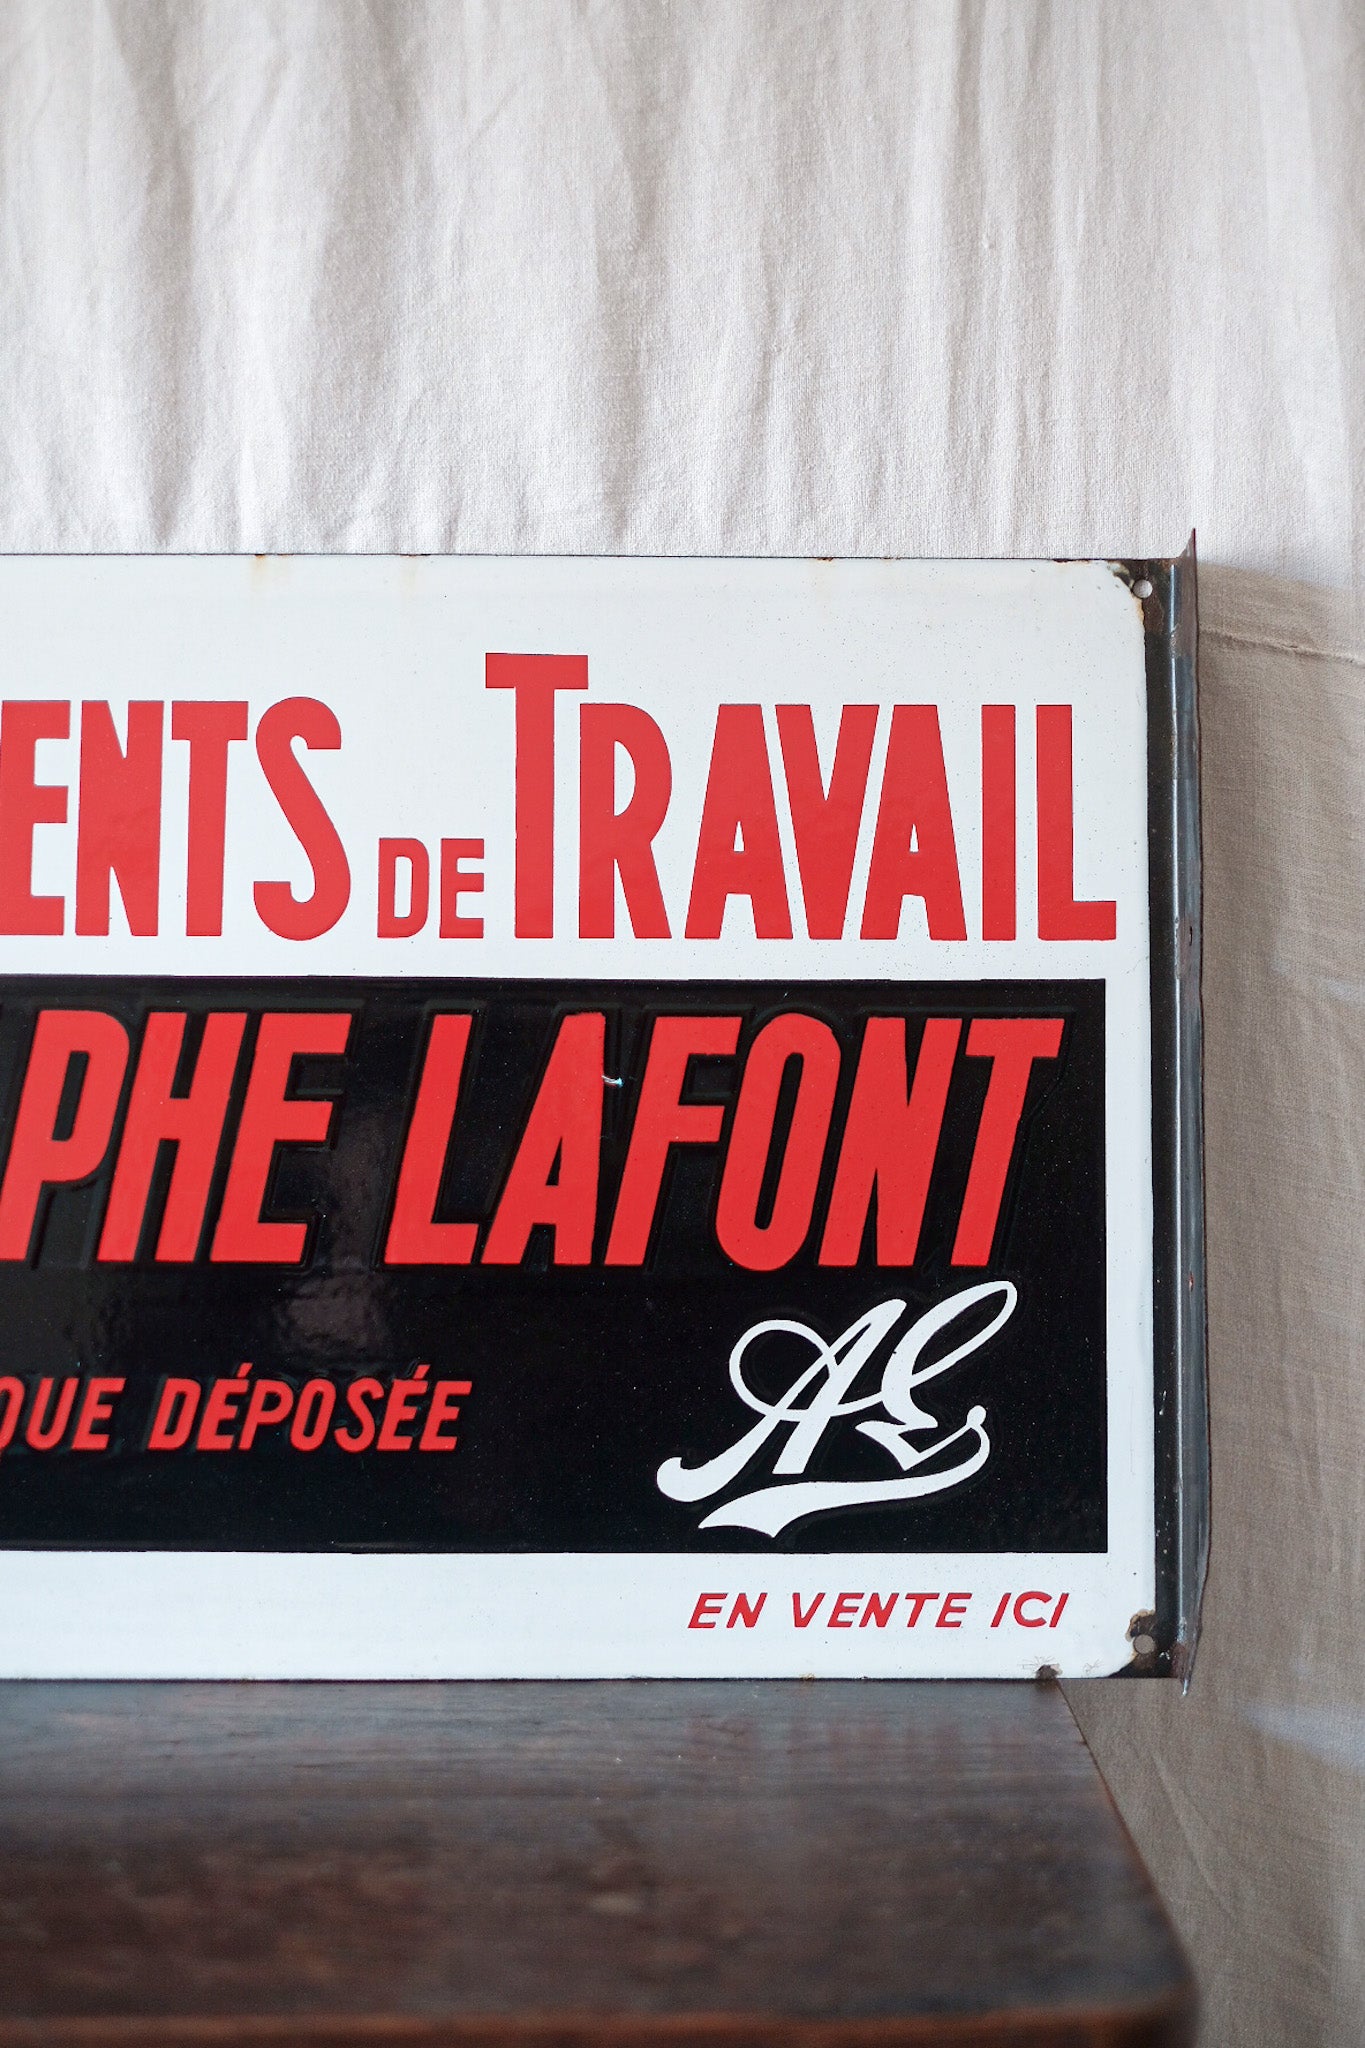 [~ 50's] แผ่นเคลือบฟันวินเทจฝรั่งเศส "Adolphe Lafont"